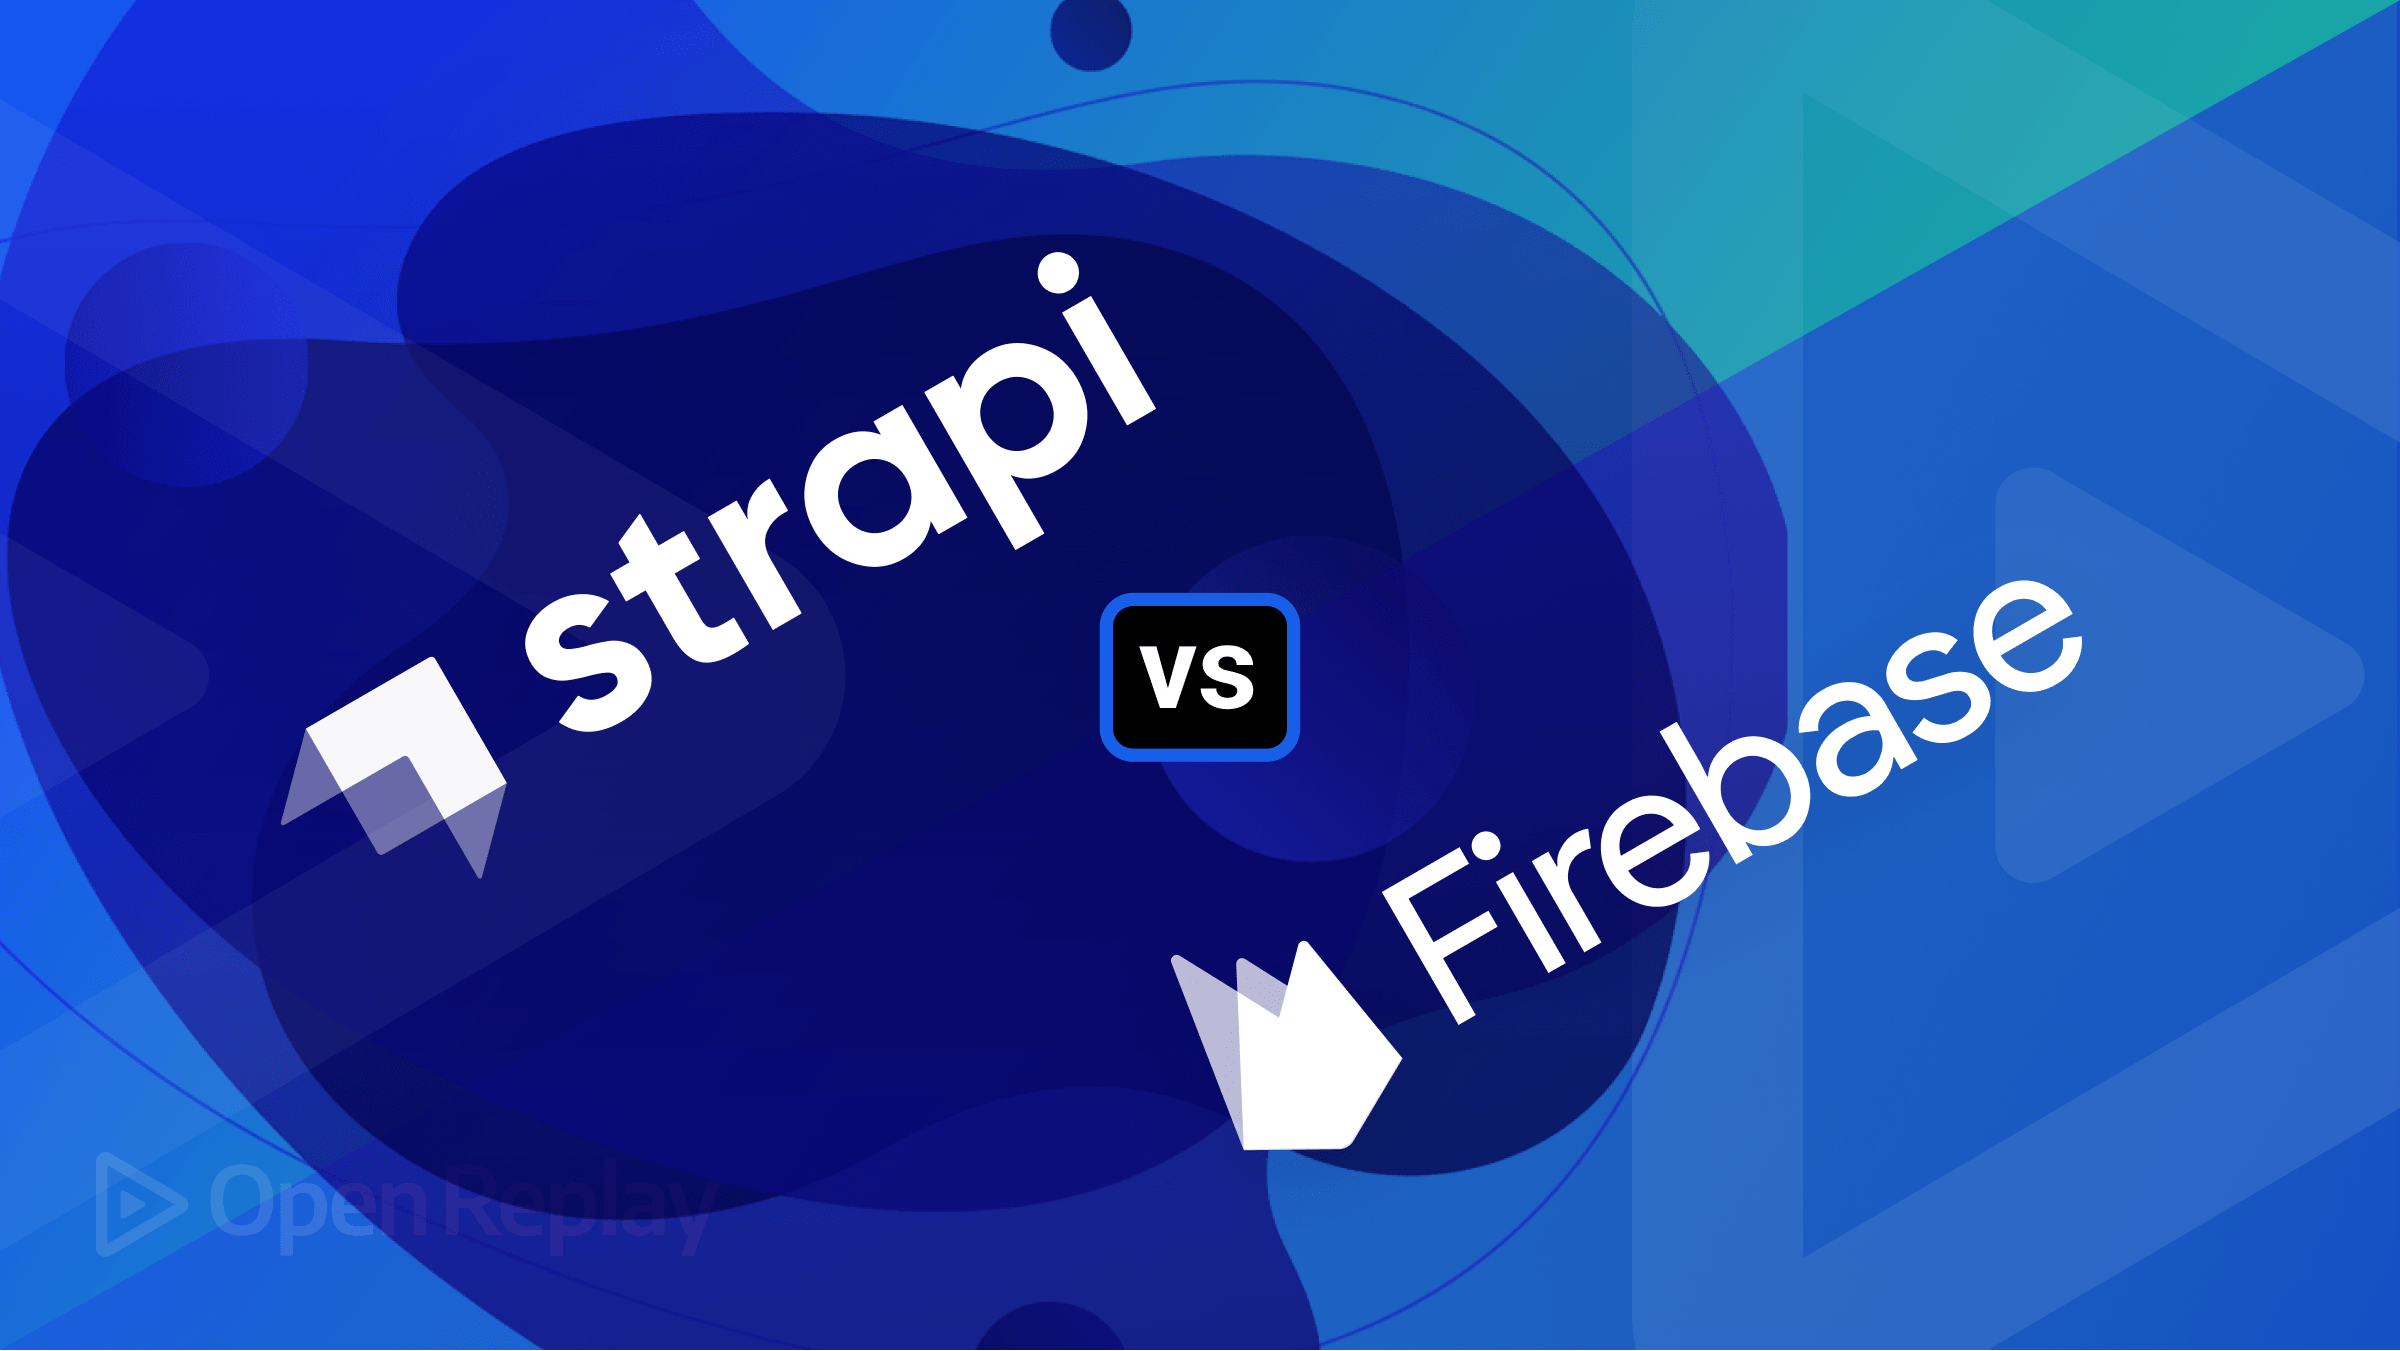 Strapi and Firebase -- A Comparison